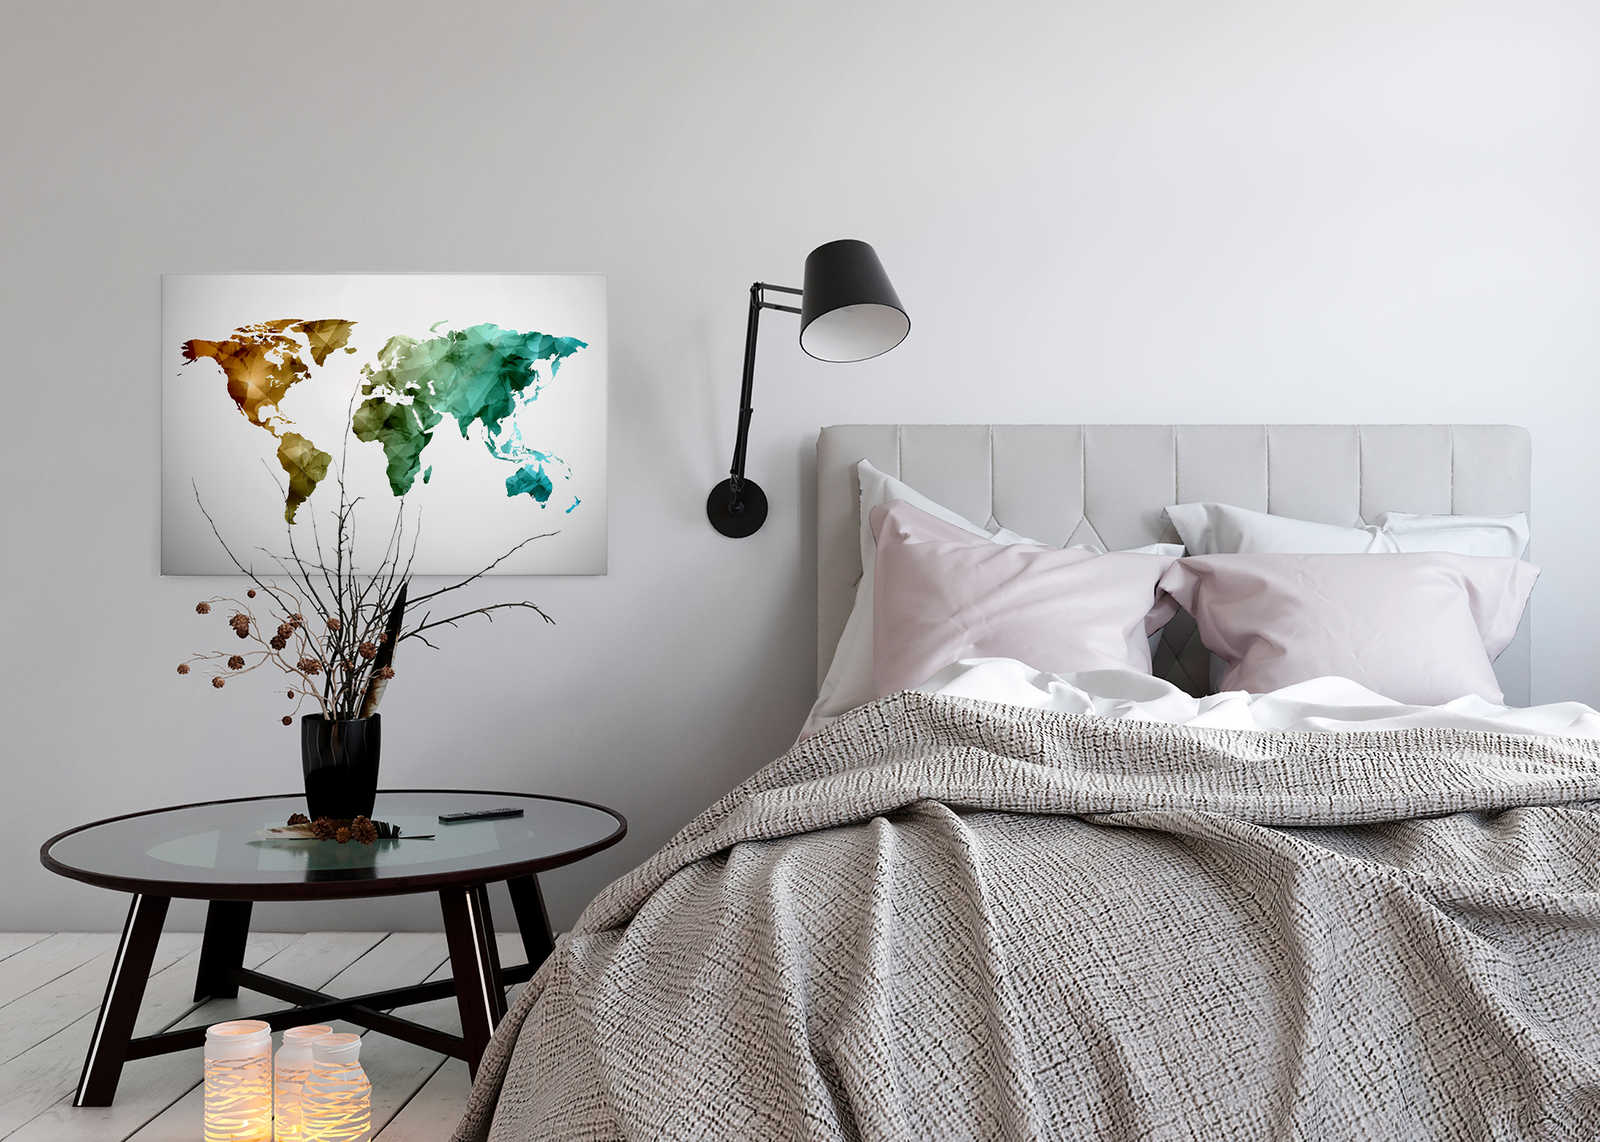             Tela con mappa del mondo realizzata con elementi grafici | WorldGrafic 1 - 0,90 m x 0,60 m
        